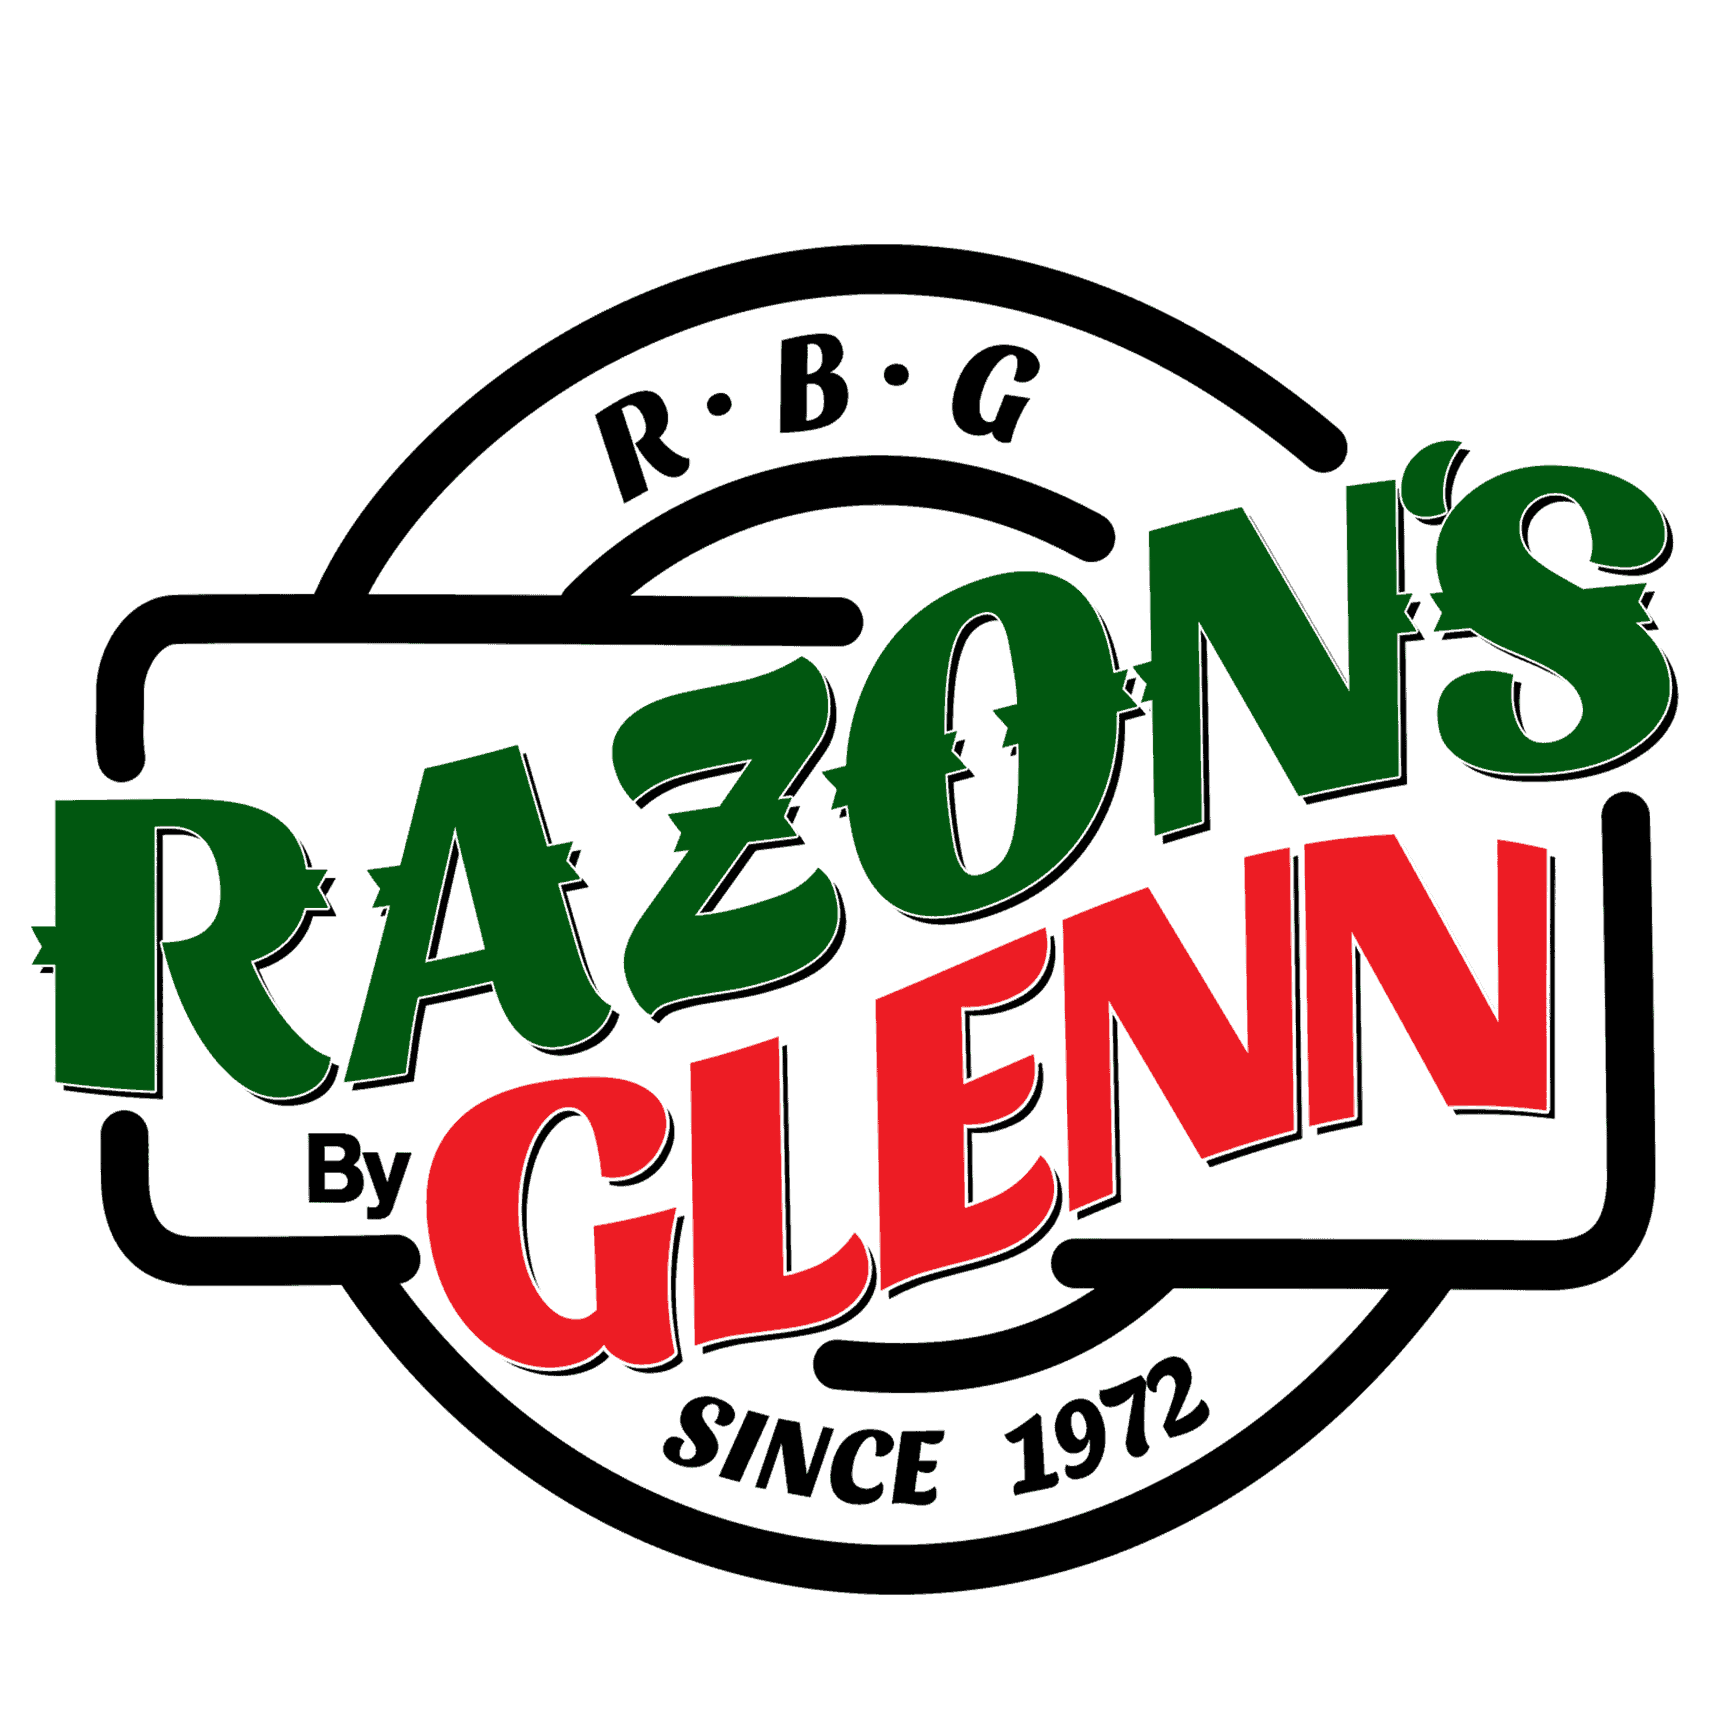 razon's by glenn logo